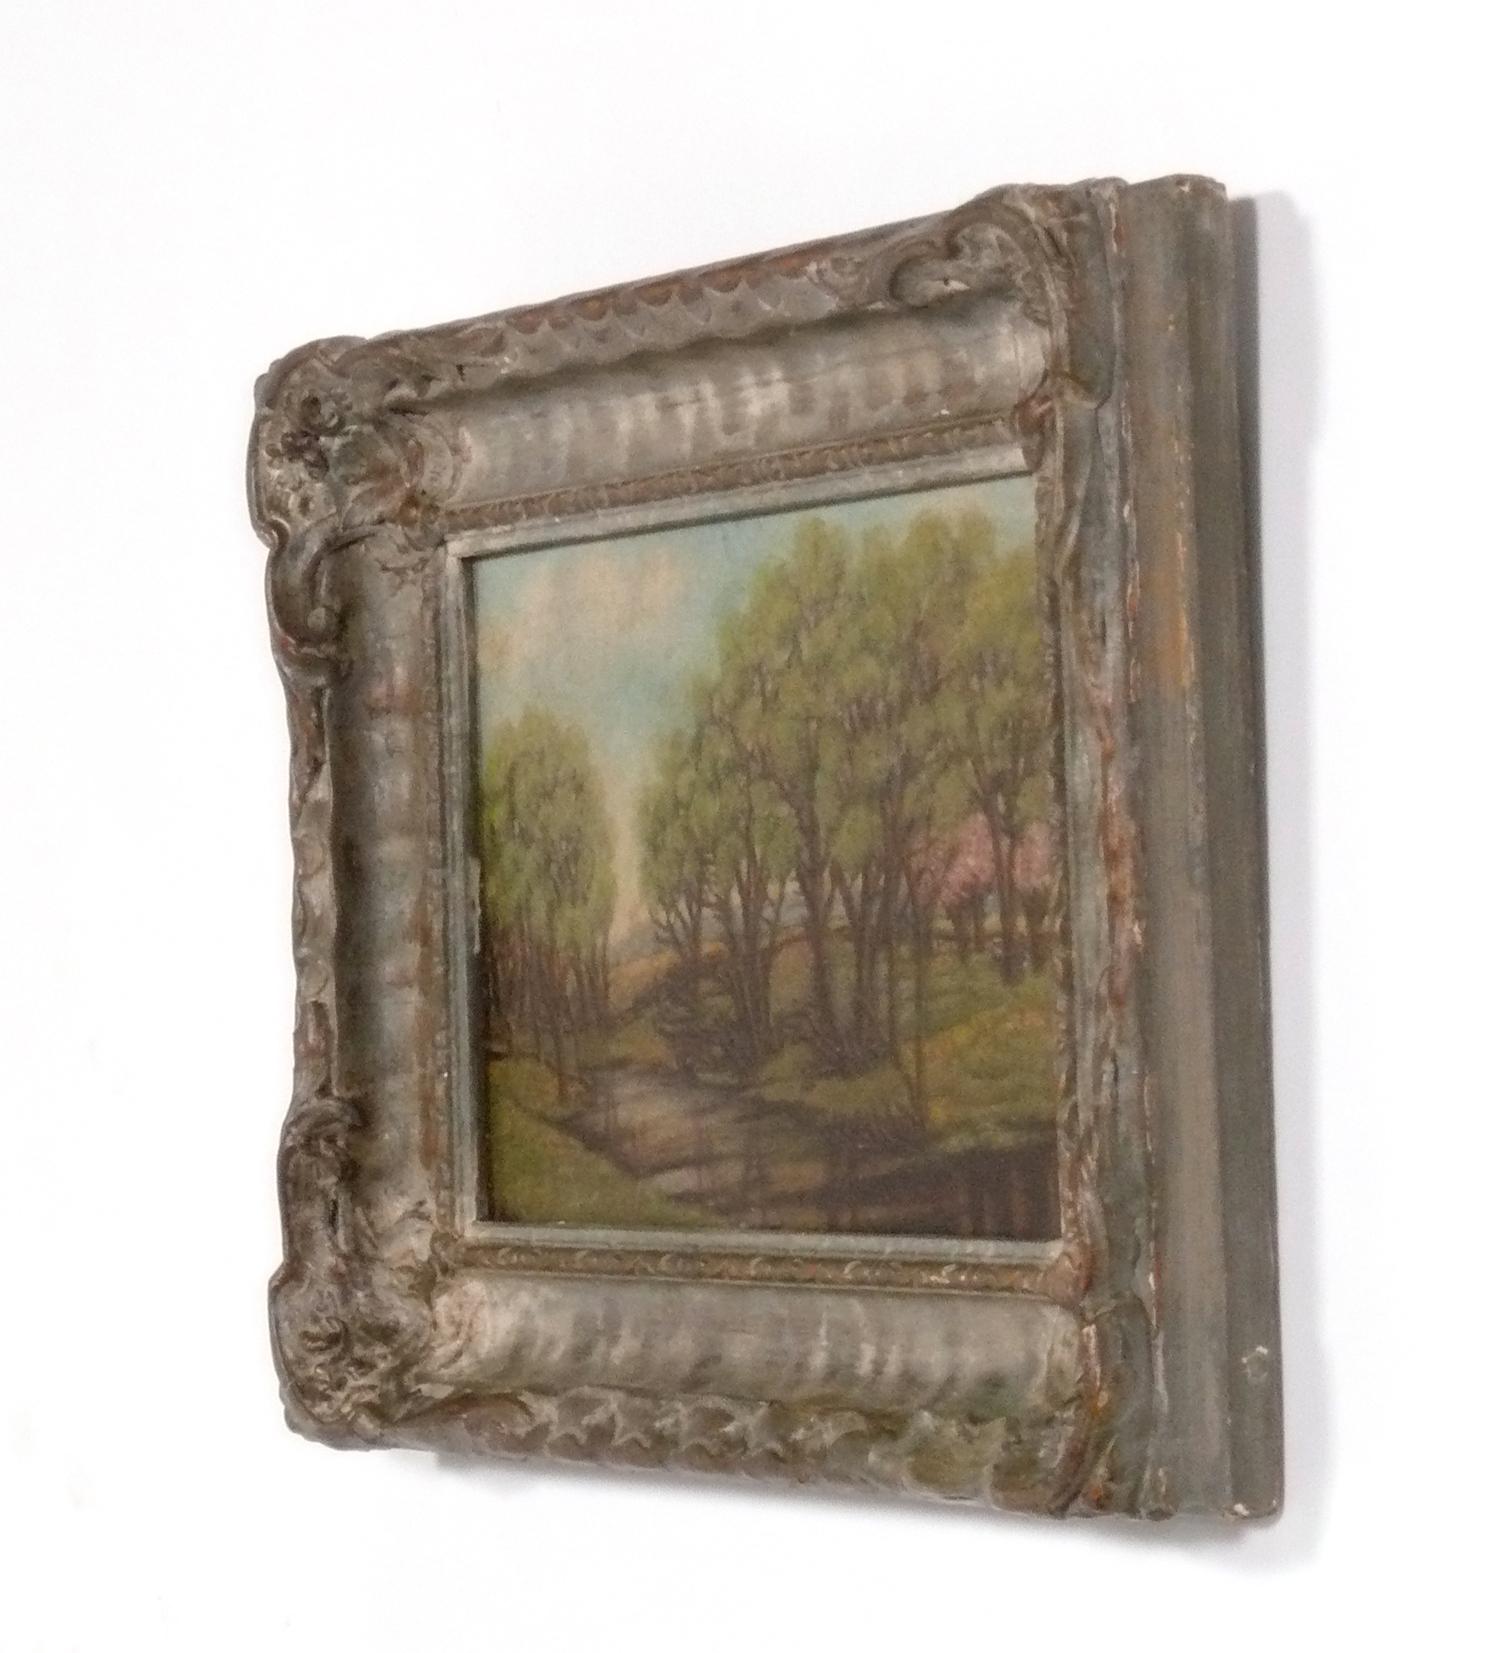 Peinture originale de paysage sur carton par Oliver Parker Black, Américain, vers la fin du 19e siècle - début du 20e siècle. Il mesure 14